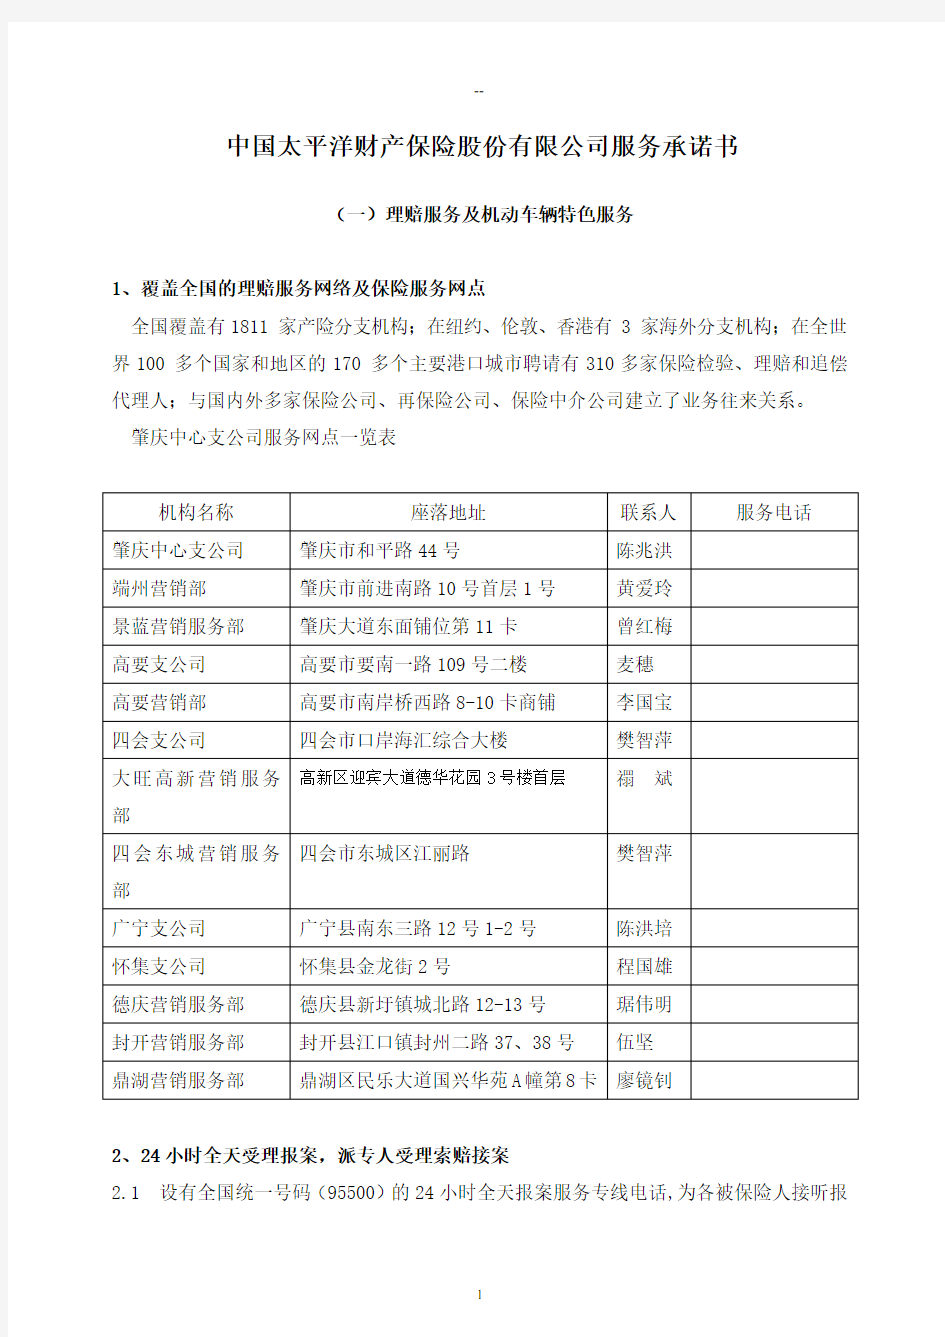 中国太平洋财产保险股份有限公司服务承诺书